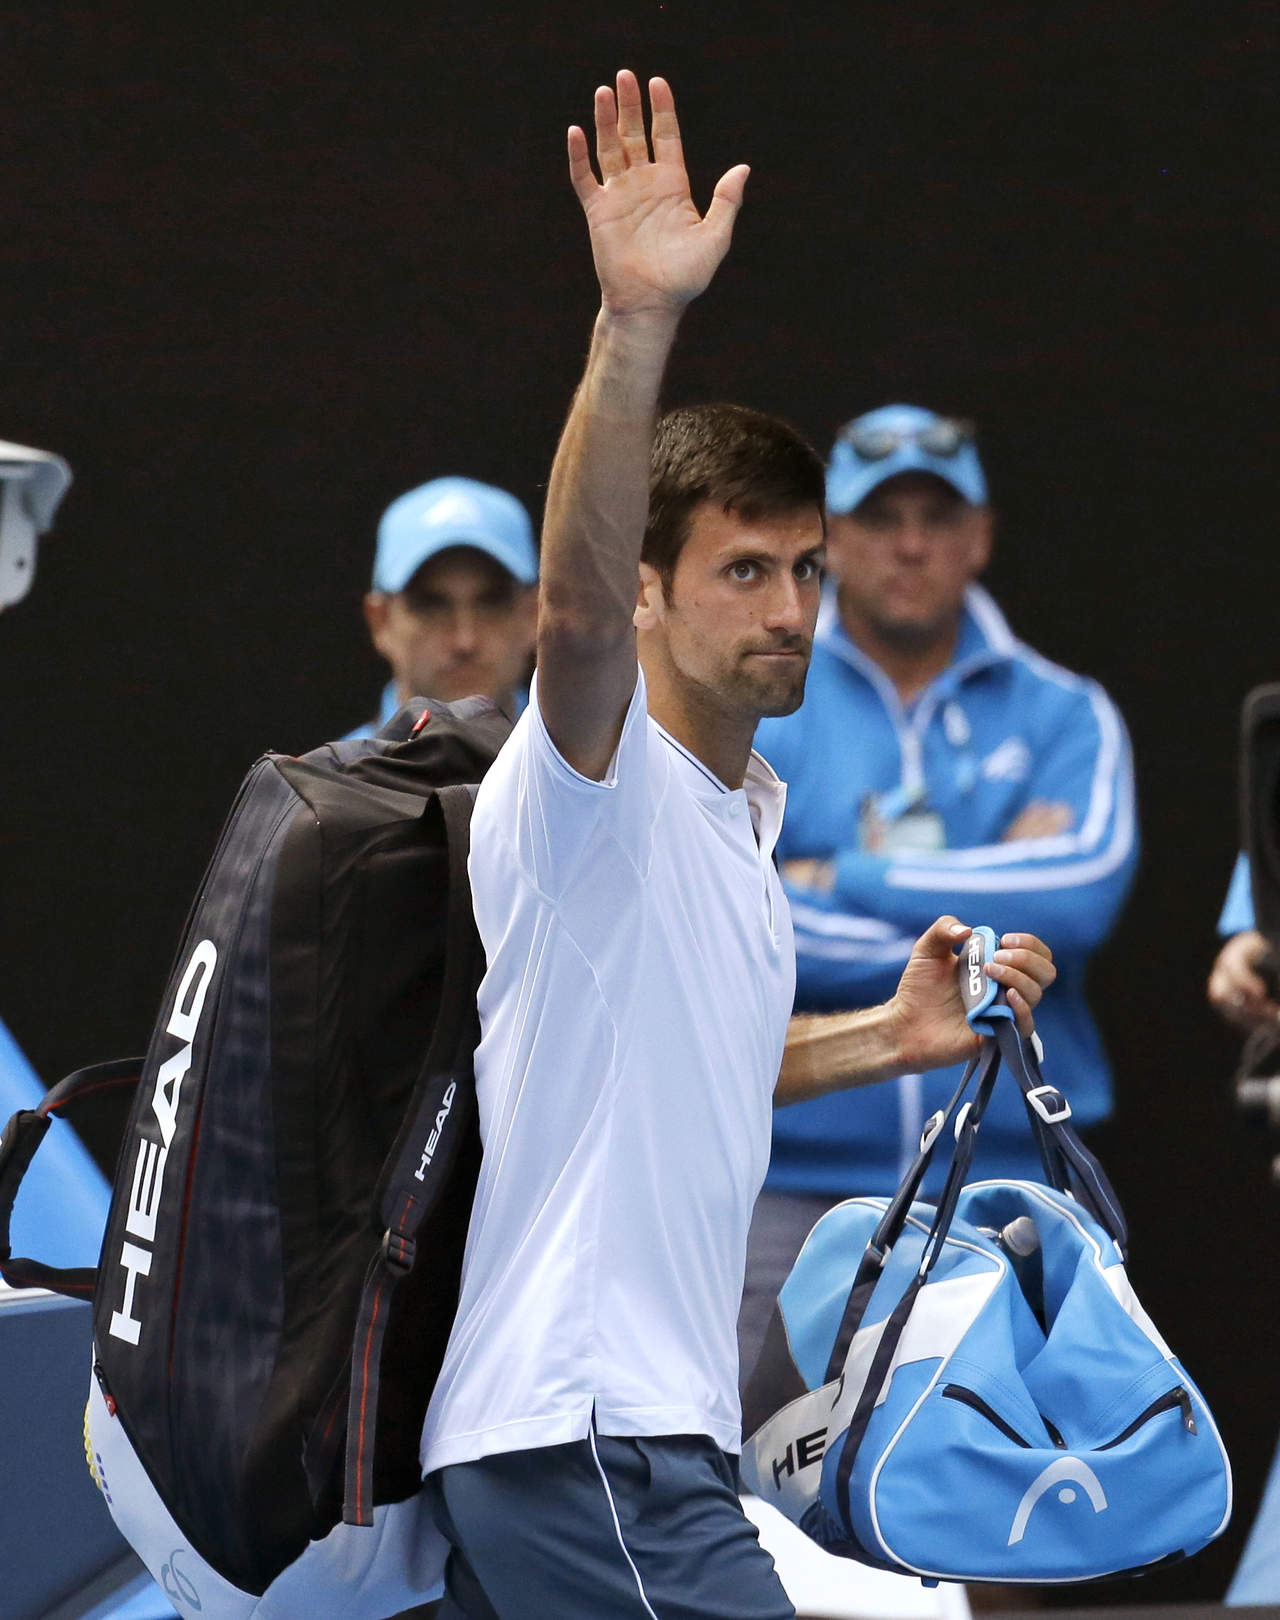 El tenista serbio Novak Djokovic, segundo favorito, se quedó sin posibilidades de defender su título en Australia. (AP)